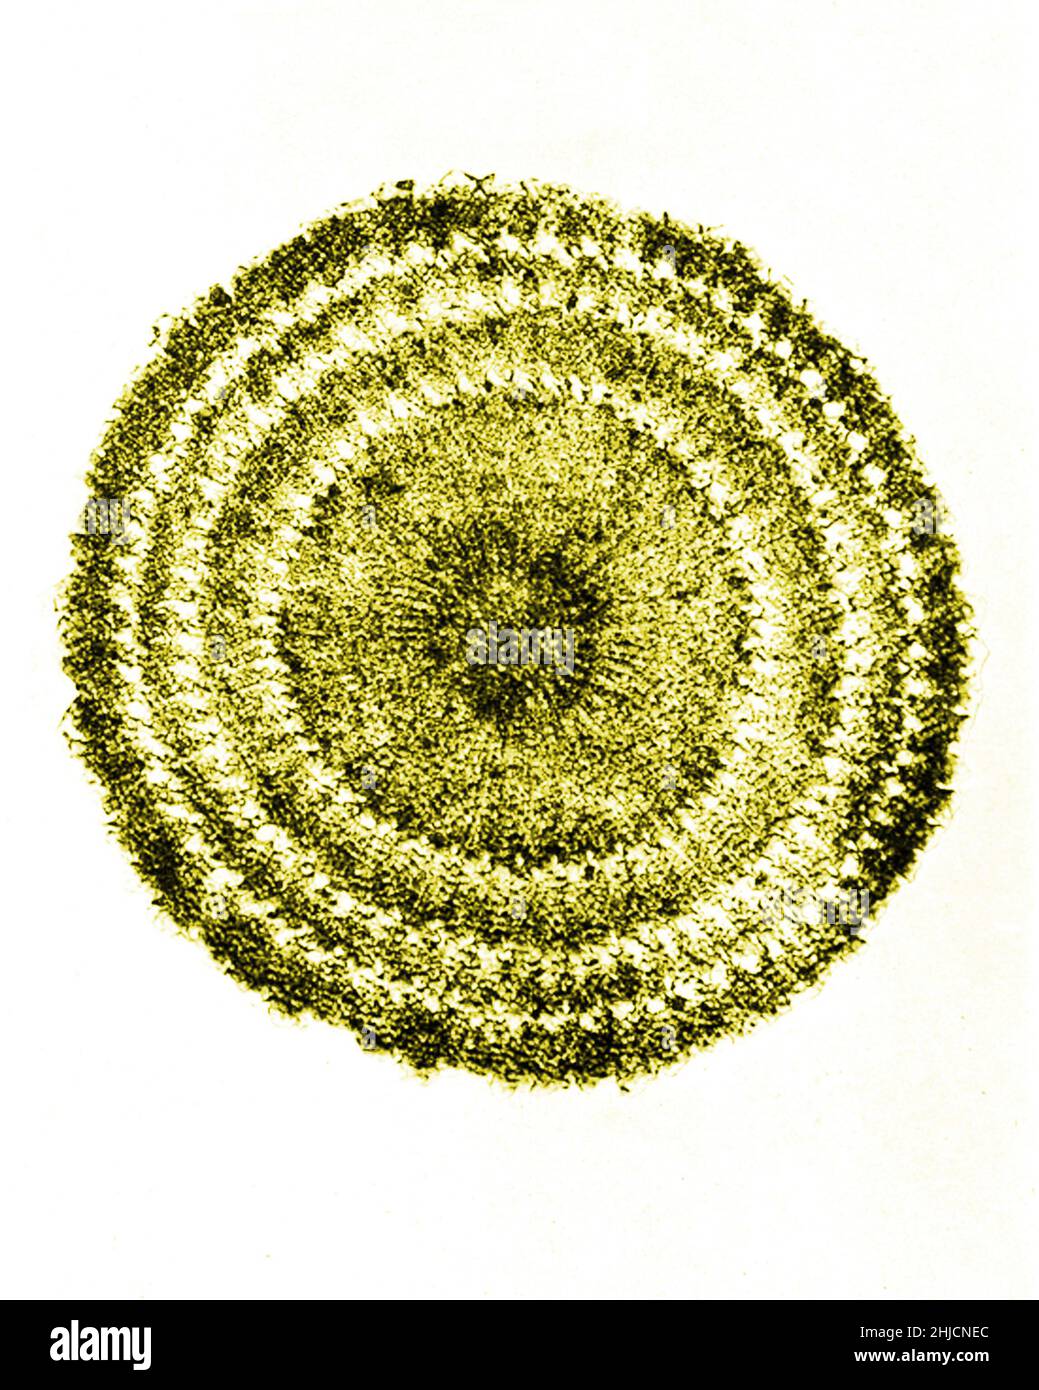 Sezione della colonna vertebrale echinus (riccio di mare). Ingrandimento: 60x. Fotomicrografia realizzata da Arthur e Smith all'inizio del 1900s, utilizzando un microscopio e una fotocamera combinati. Nel 1904, la Royal Society di Londra ha esposto al pubblico una serie di fotomicrografie di Smith. In seguito sono stati pubblicati nel 1909 in un libro intitolato "Nature Through Microscope & Camera". Sono stati i primi esempi di fotomicroscopia che molti avevano mai visto. Foto Stock